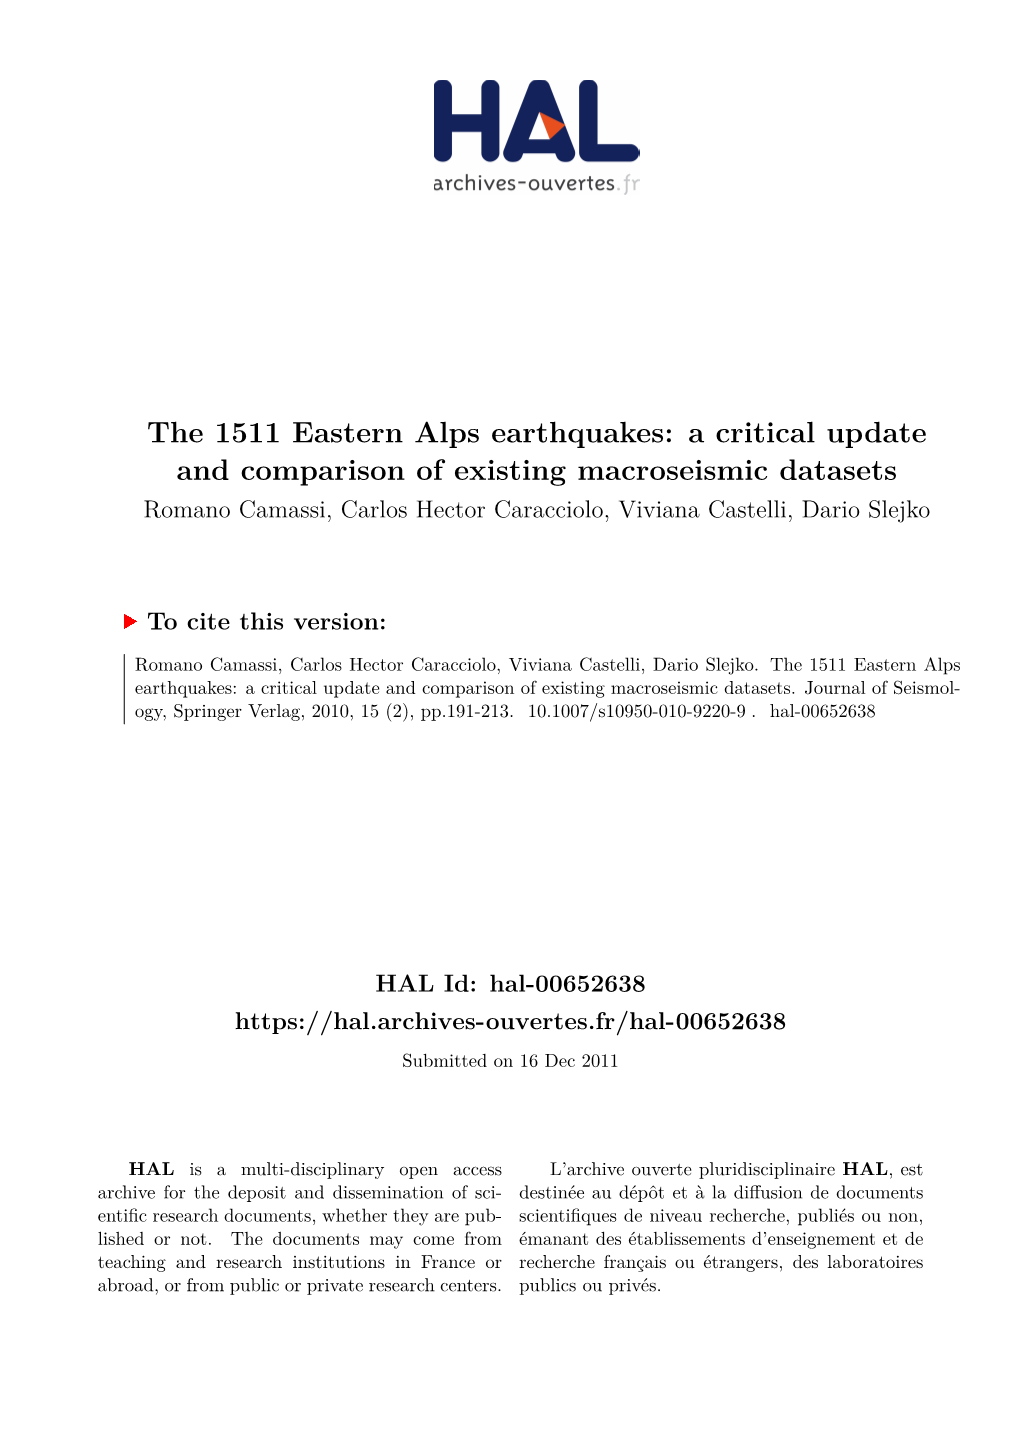 The 1511 Eastern Alps Earthquakes